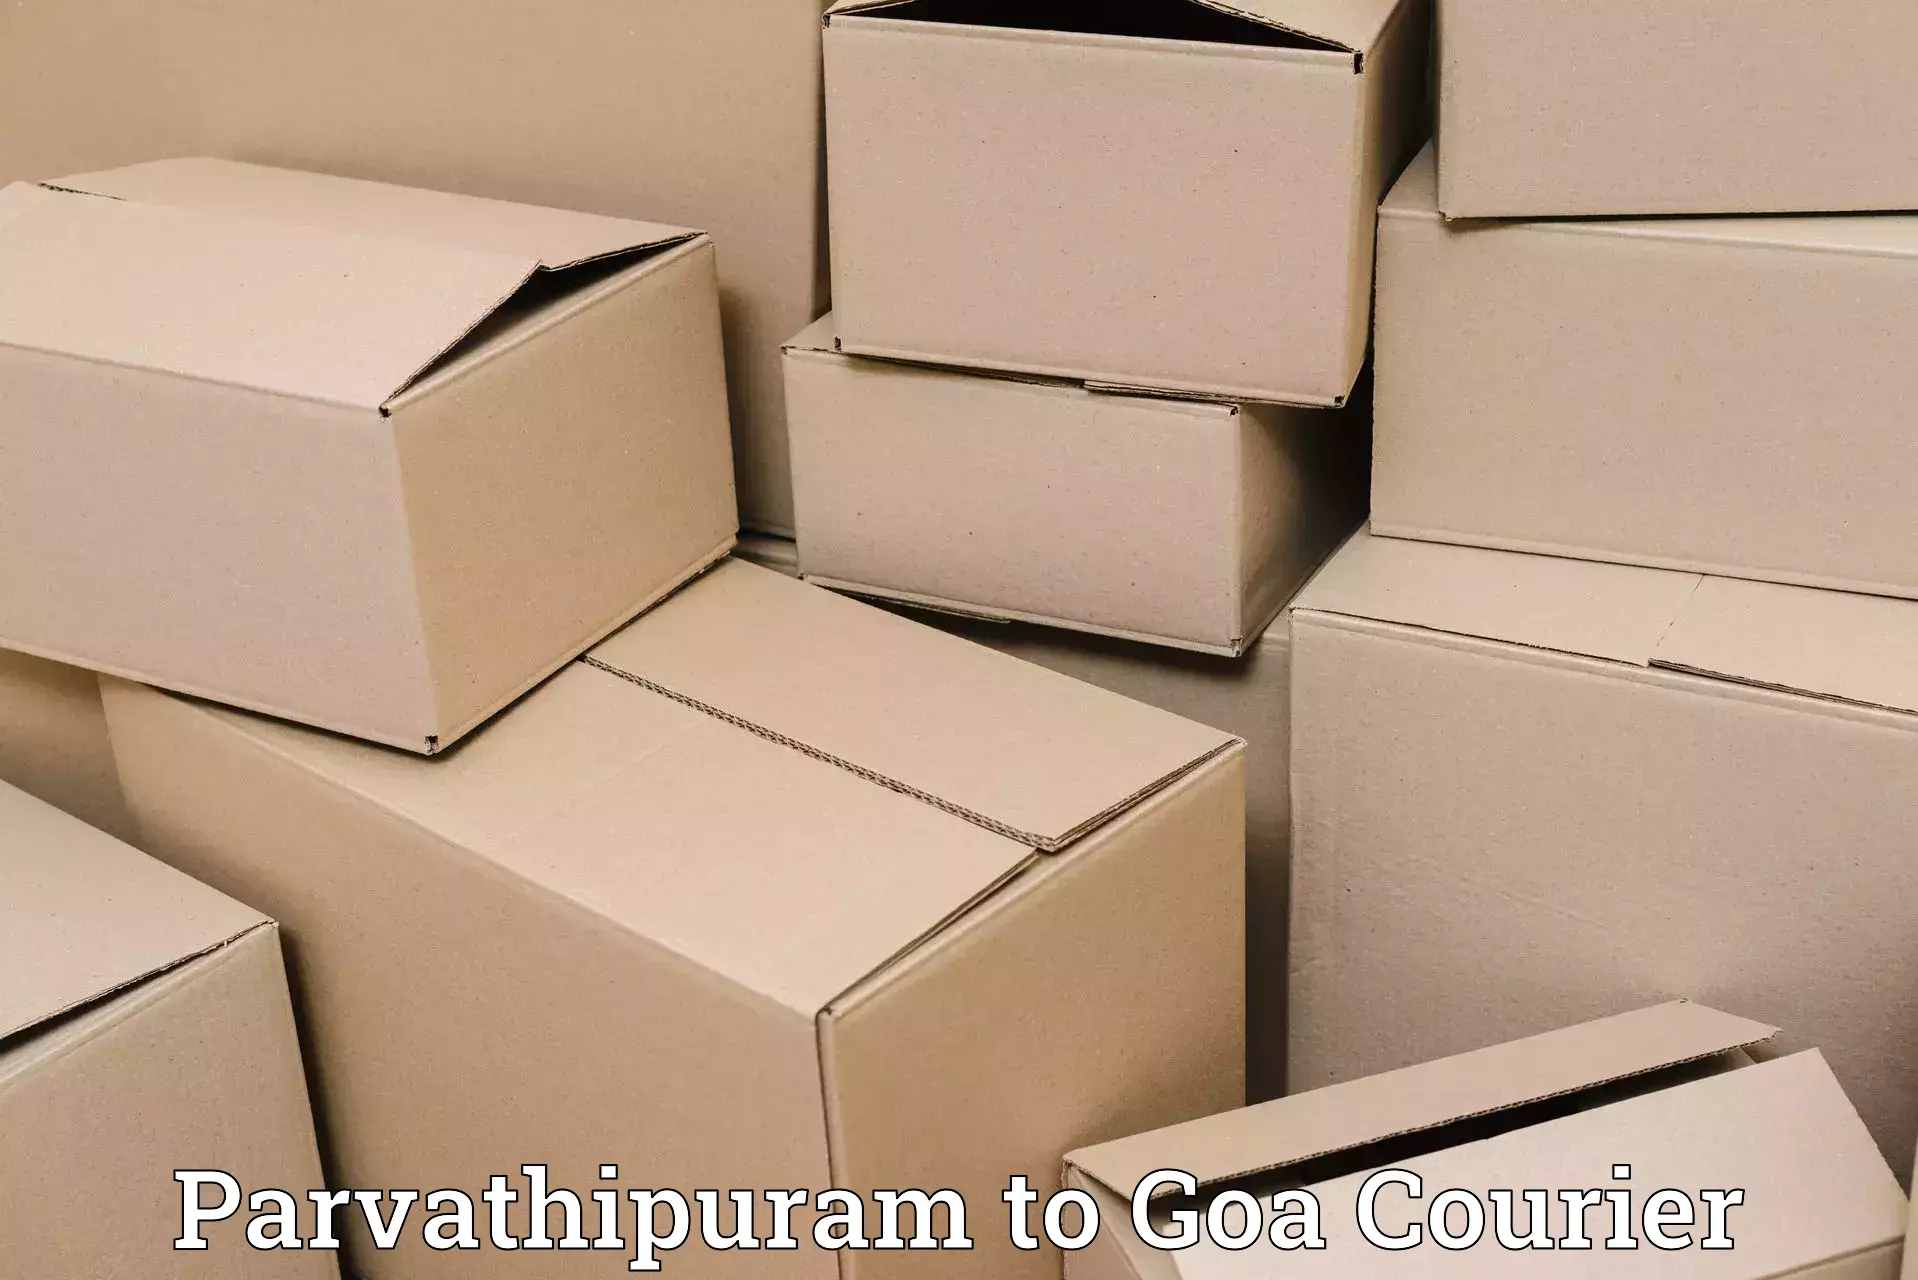 Efficient shipping platforms Parvathipuram to IIT Goa